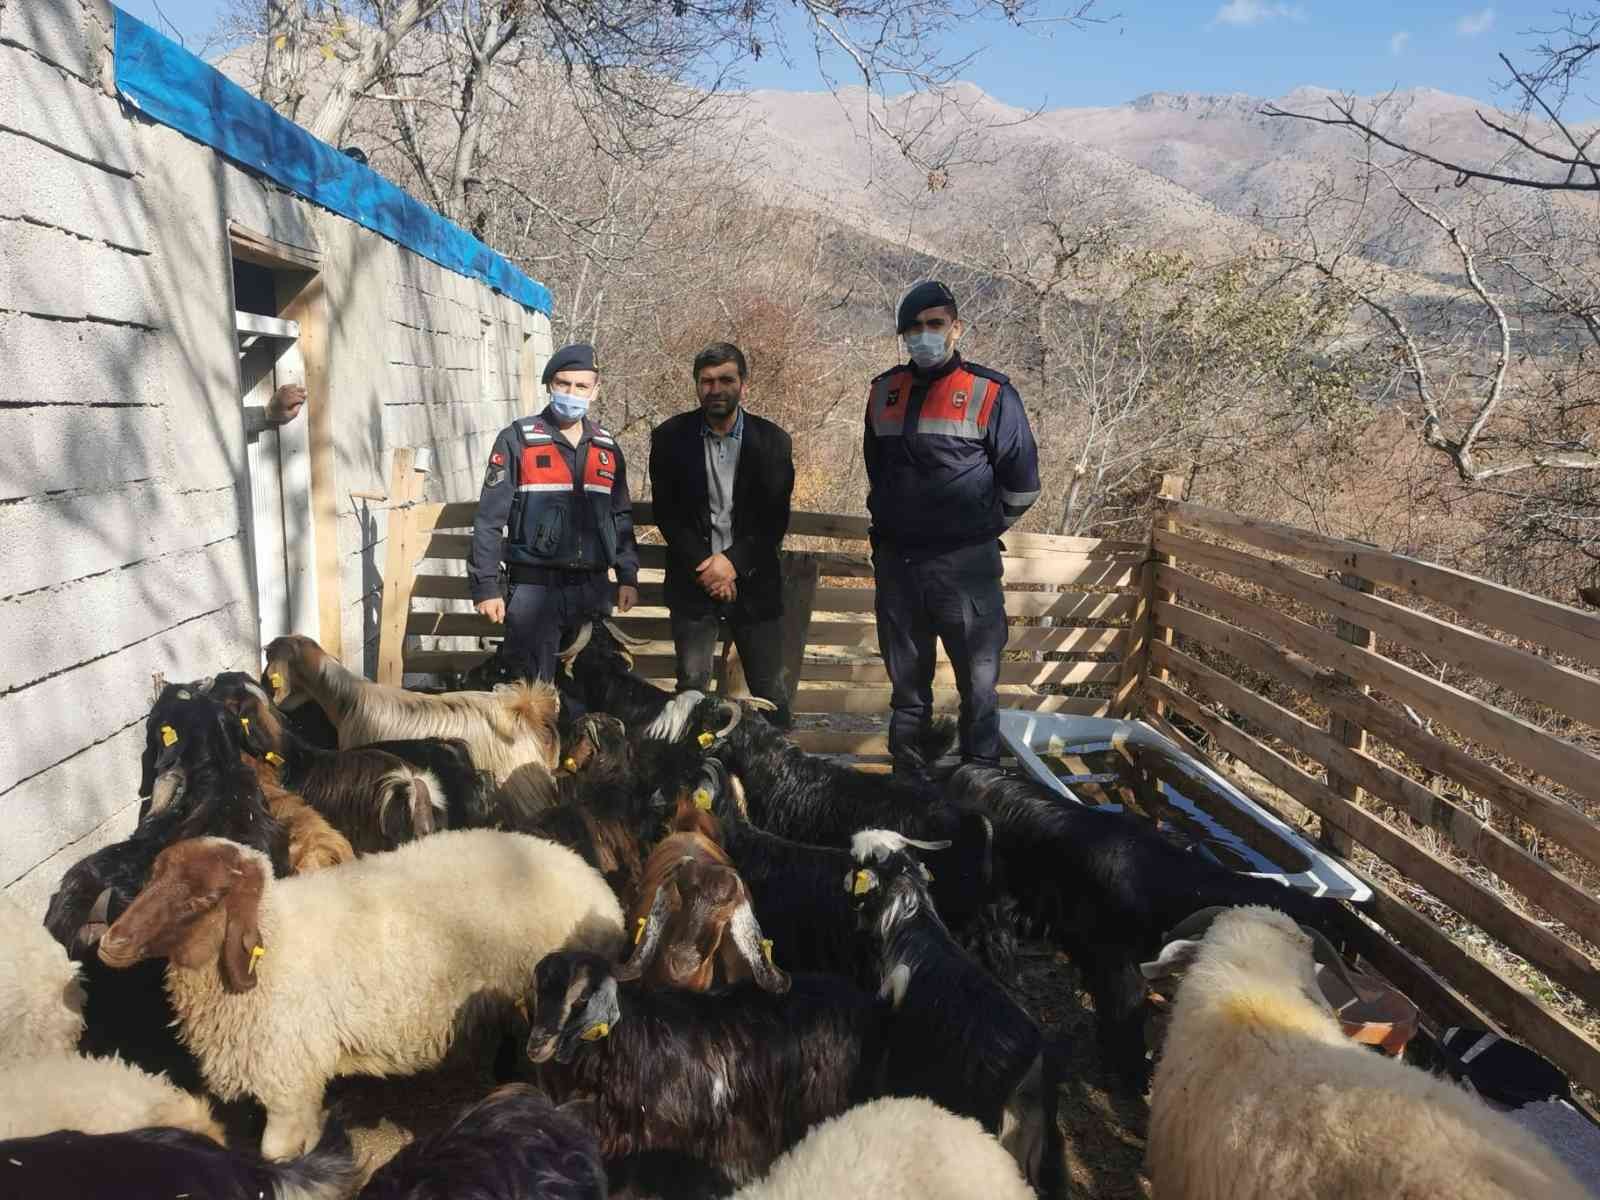 Jandarma kaybolan hayvanları drone ile bulup sahibine teslim etti #kahramanmaras